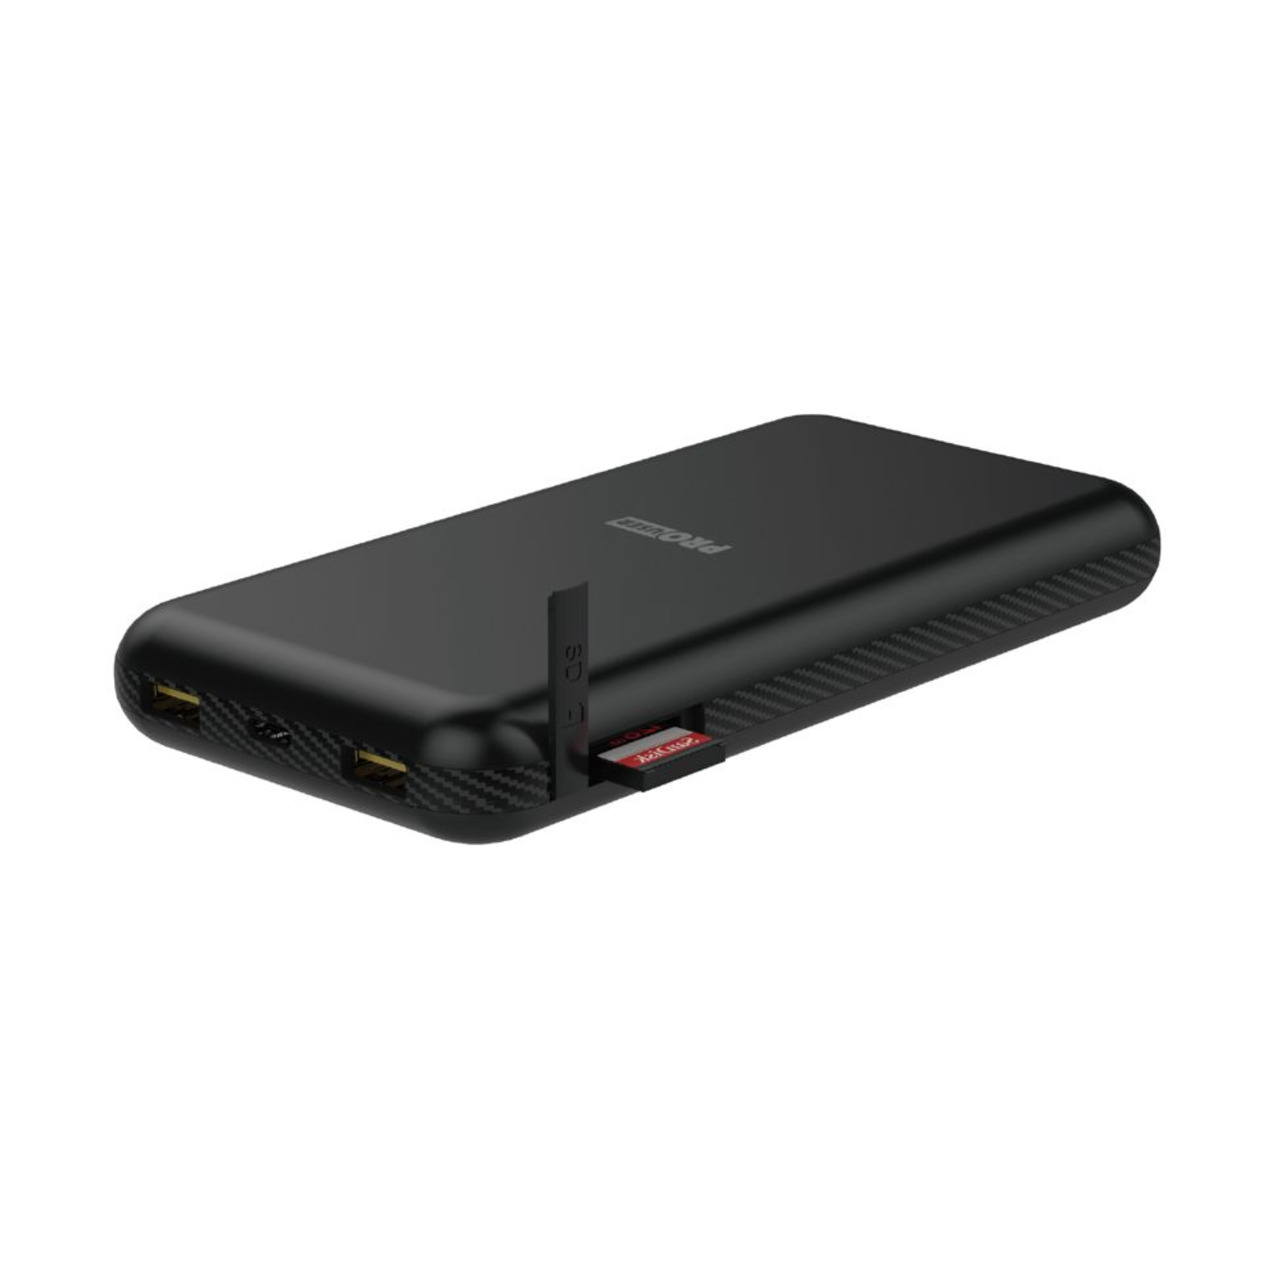 ProUser 3-in-1 Powerbank + USB-HUB + SD-Card- Reader mit 20-000 mAh (74 Wh)- 30 W Ladeleistung unter Stromversorgung